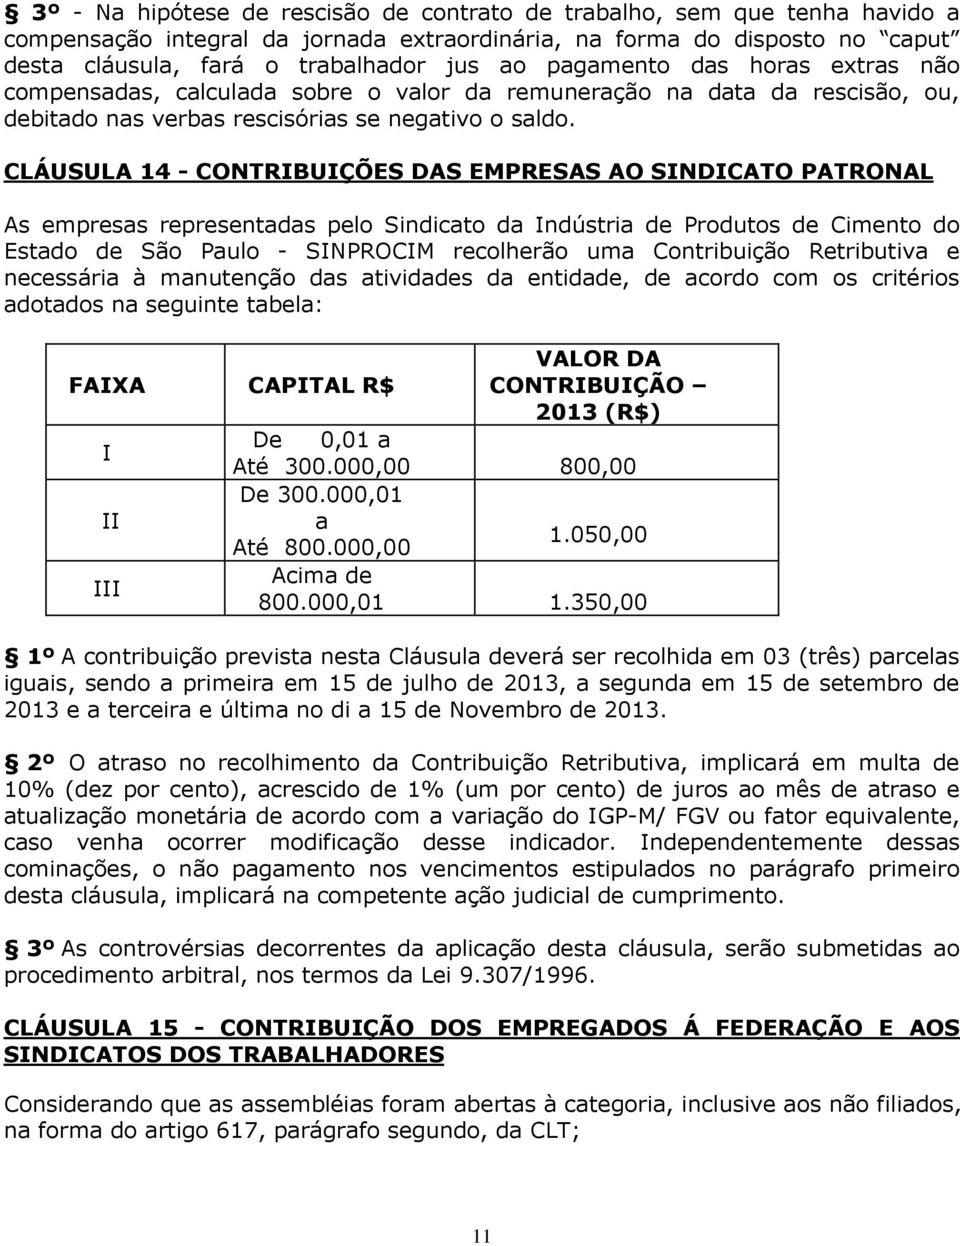 CLÁUSULA 14 - CONTRIBUIÇÕES DAS EMPRESAS AO SINDICATO PATRONAL As empresas representadas pelo Sindicato da Indústria de Produtos de Cimento do Estado de São Paulo - SINPROCIM recolherão uma